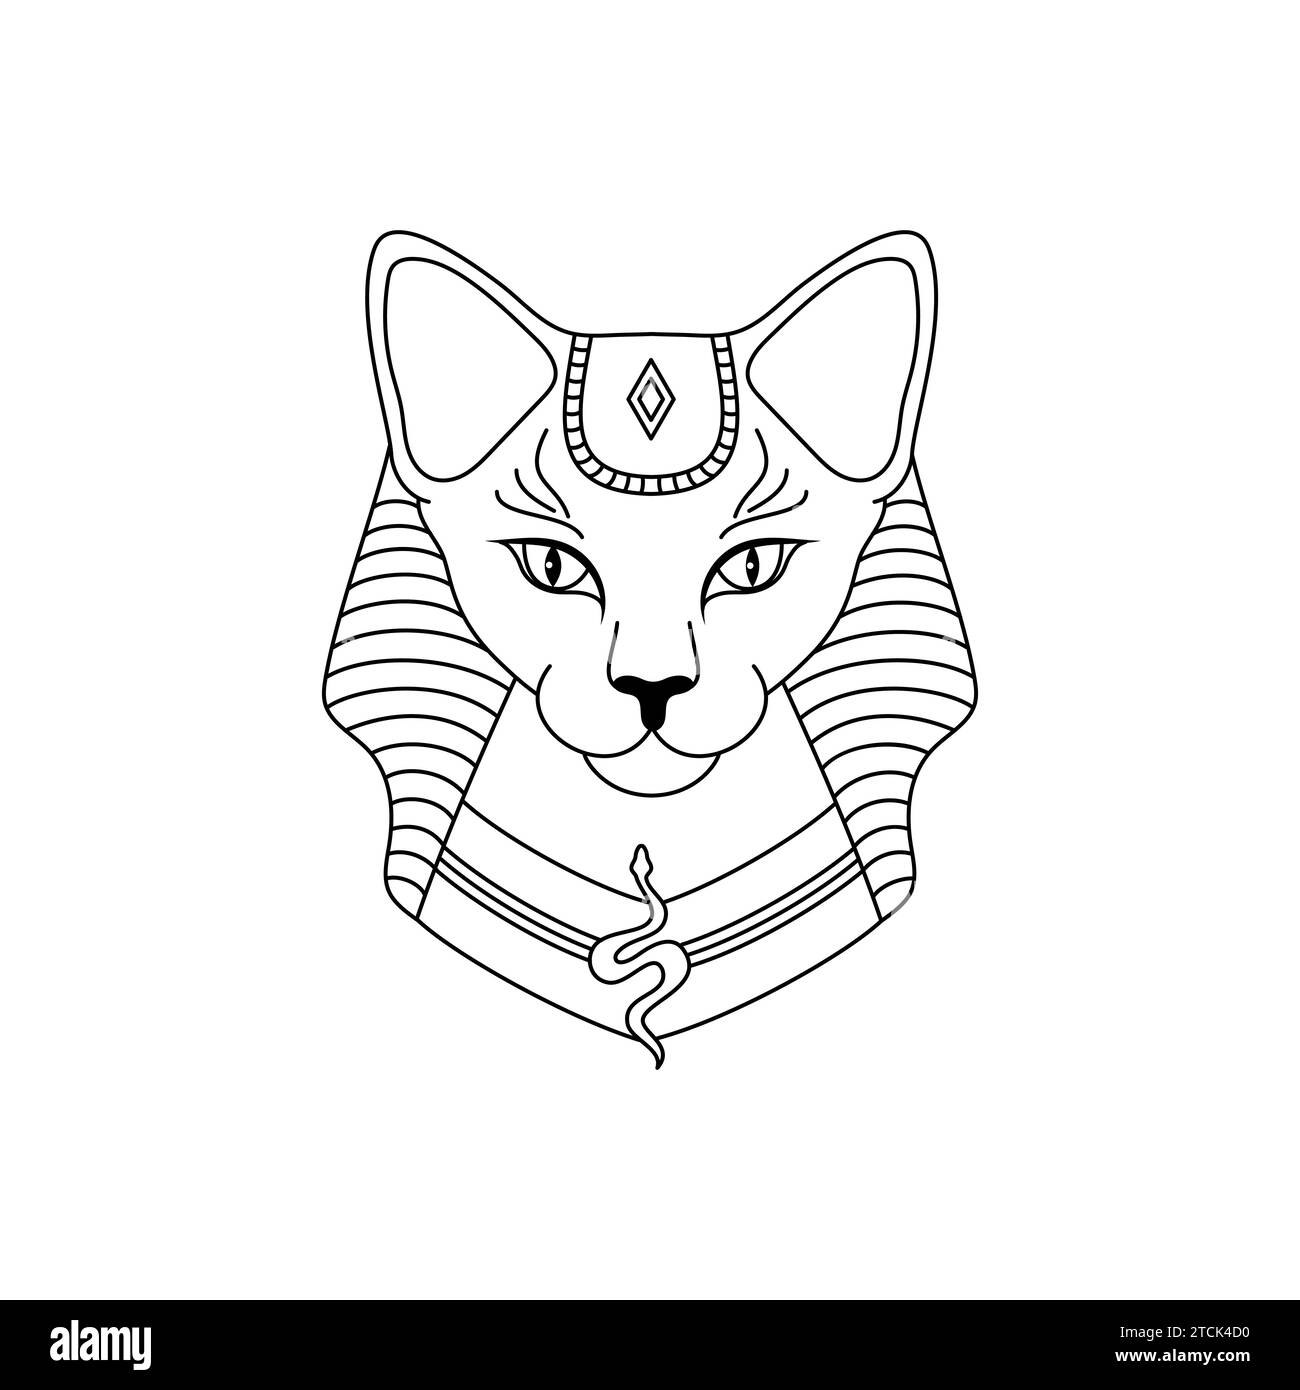 Ägyptische Katze im linearen Stil auf weißem Hintergrund. Die altägyptische Göttin Bast oder Bastet. Stock Vektor